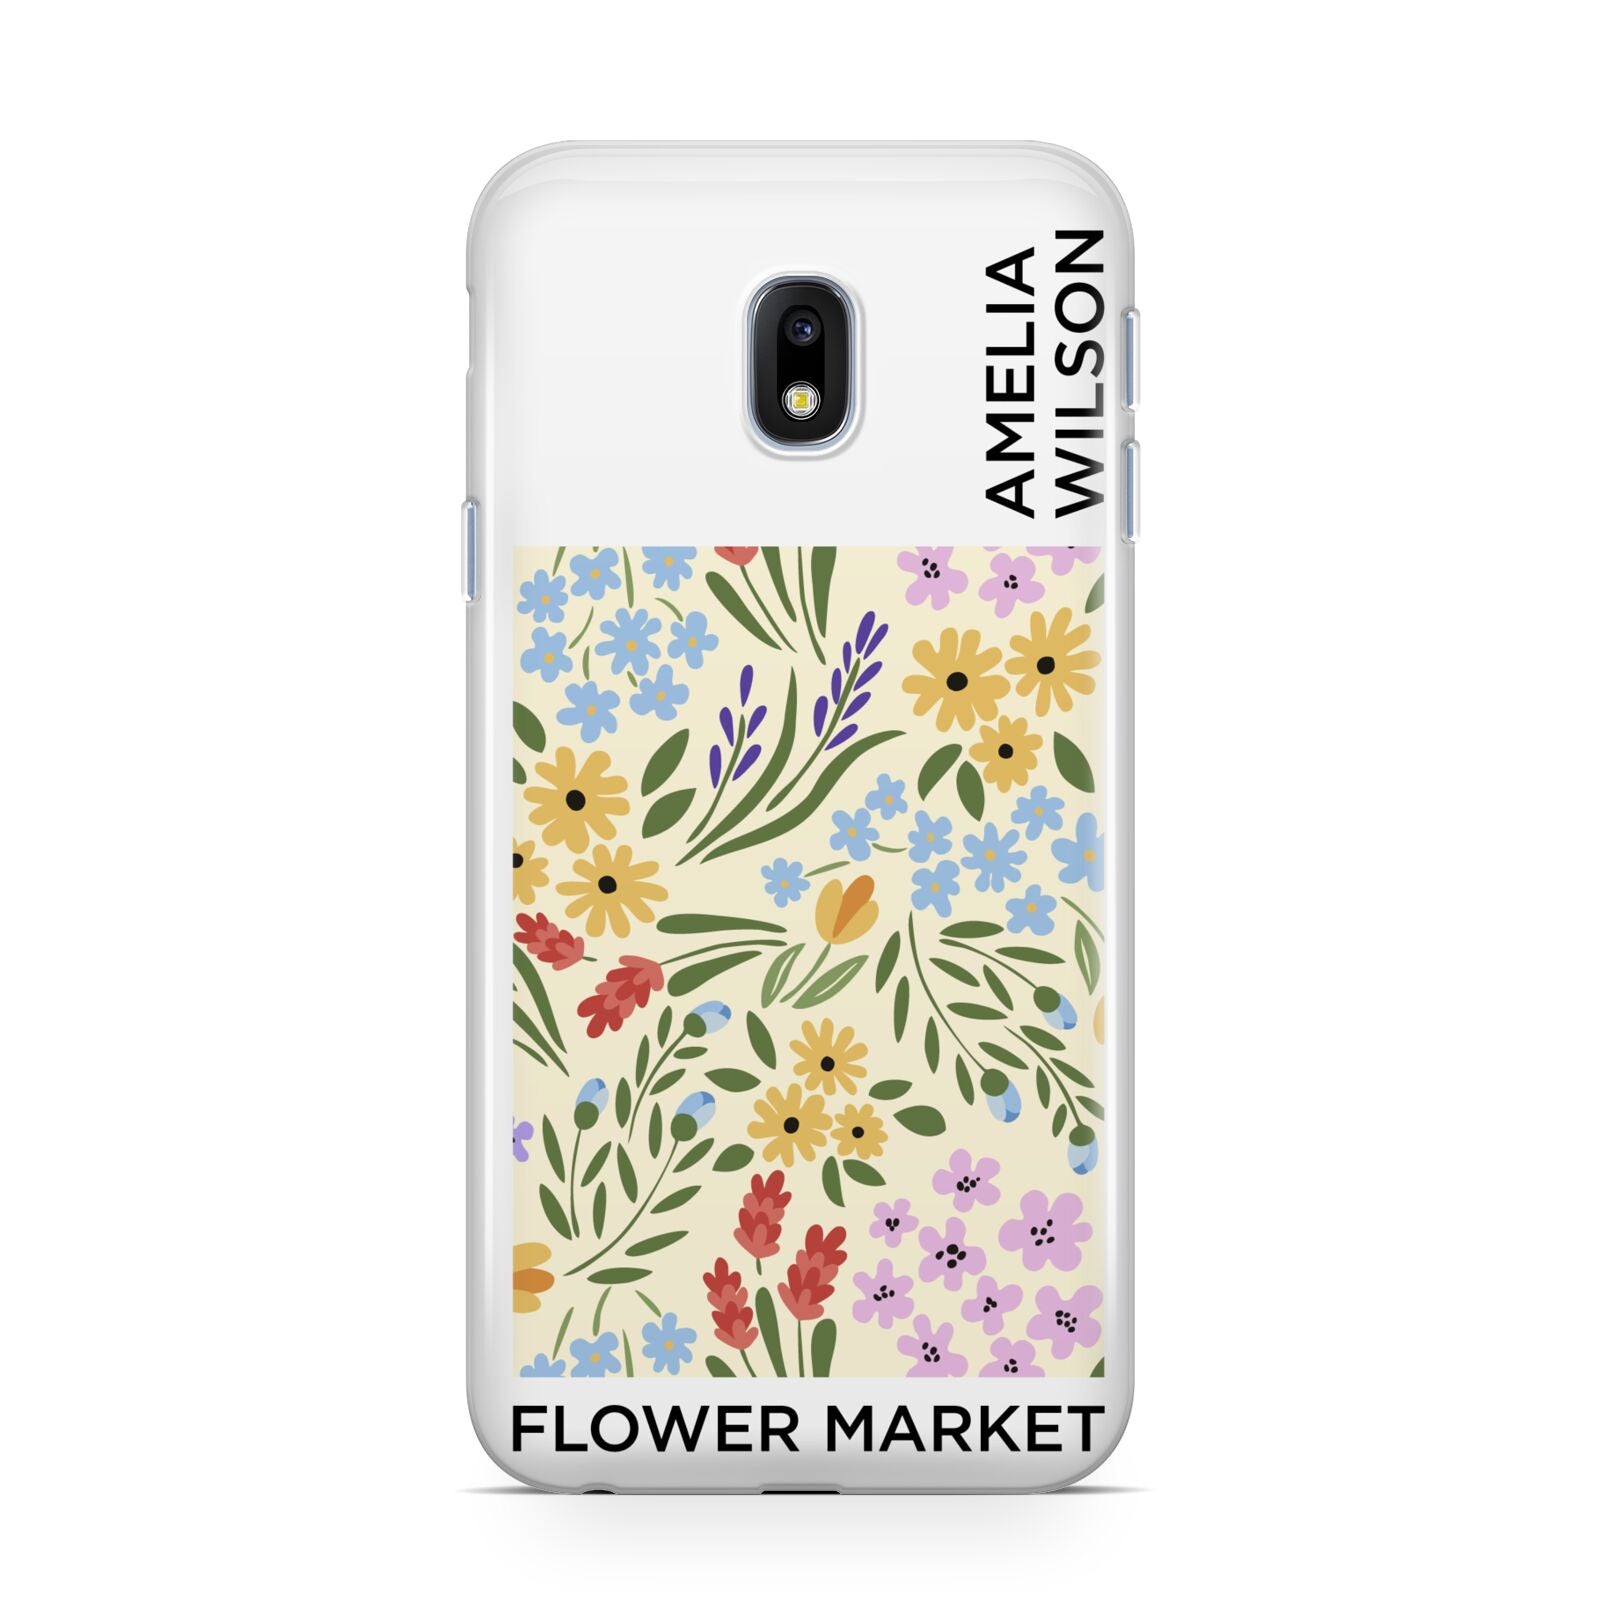 Paris Flower Market Samsung Galaxy J3 2017 Case